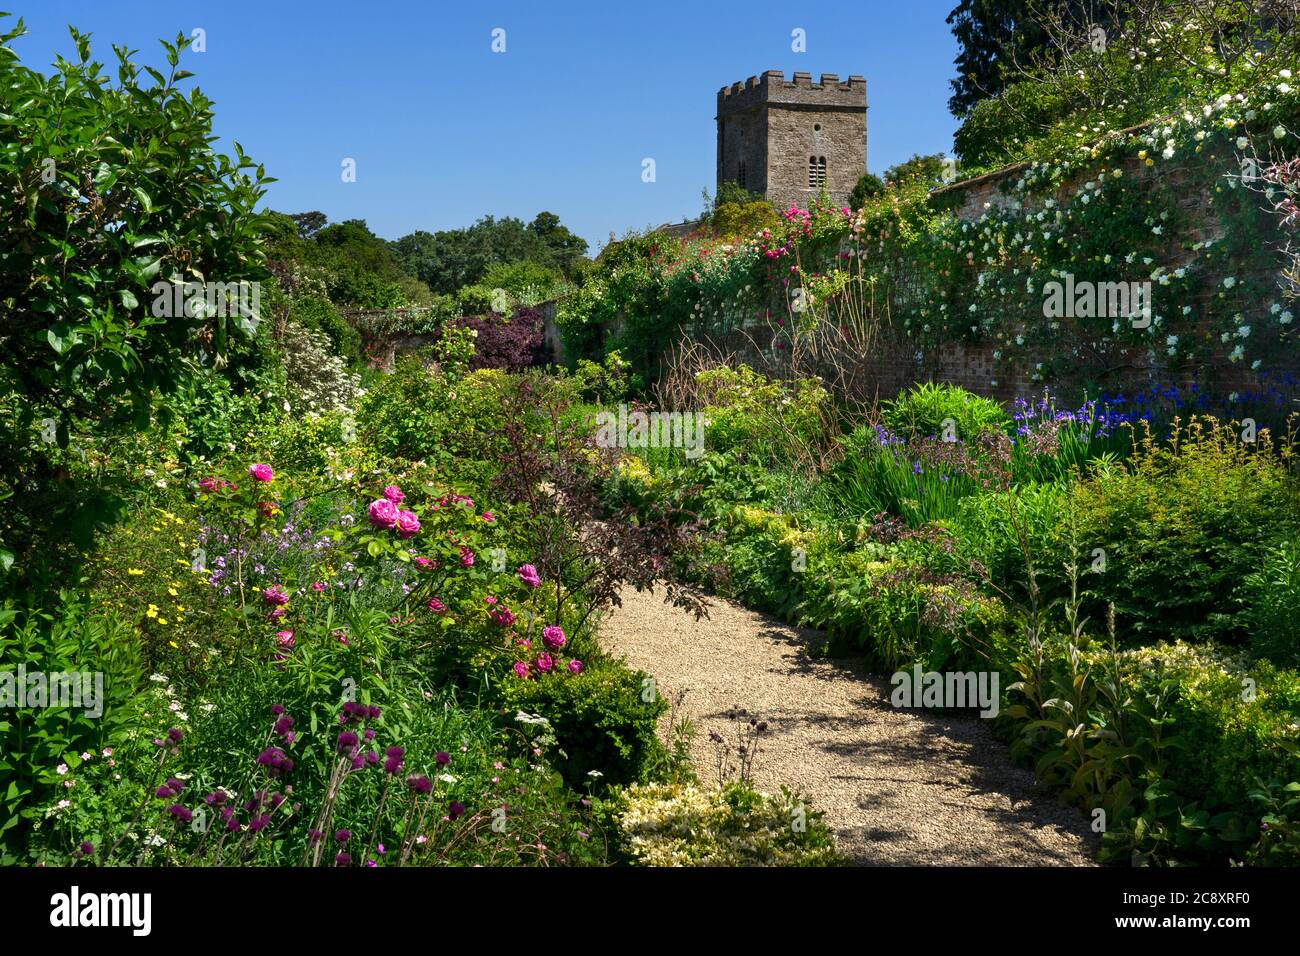 Rousham House and Gardens,Oxfordshire,England Stock Photo